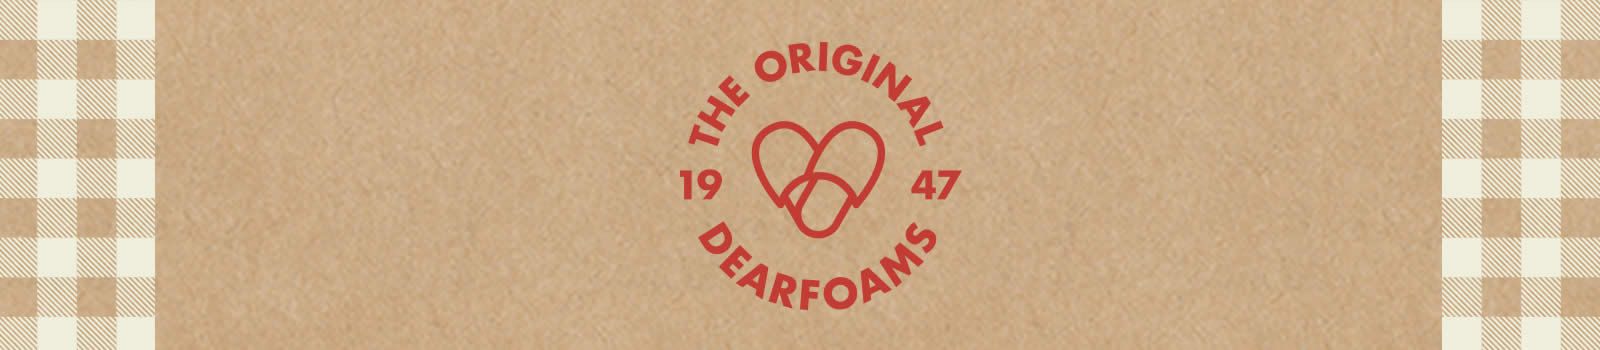 Dearfoams Original Banner